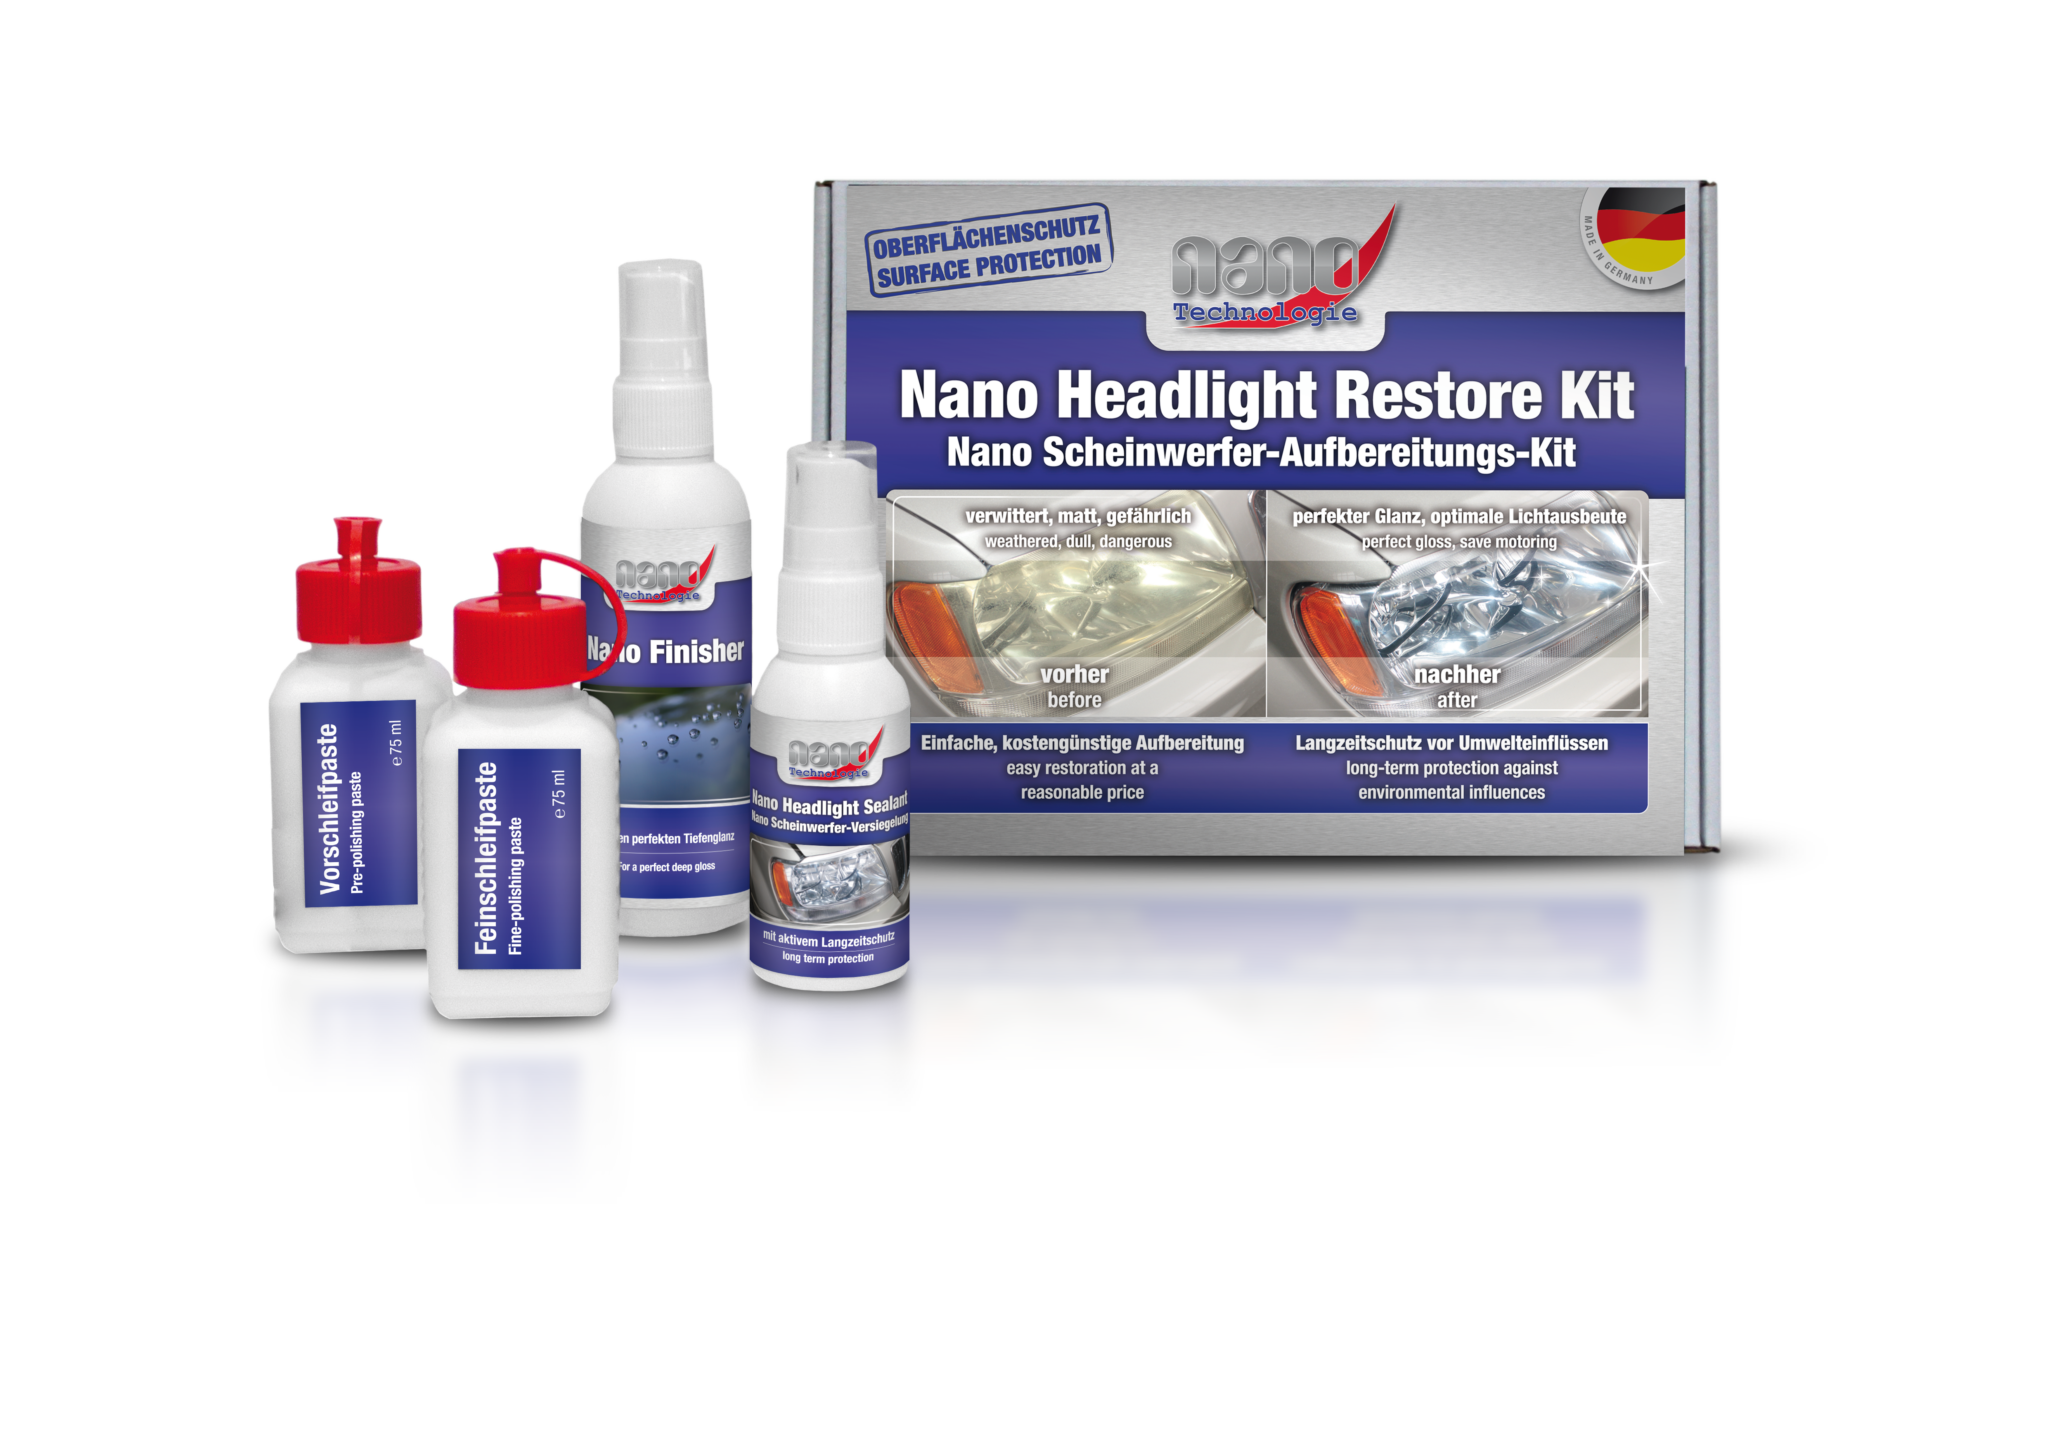 Nano Scheinwerfer-Aufbereitungs-Kit - bluechemGROUP